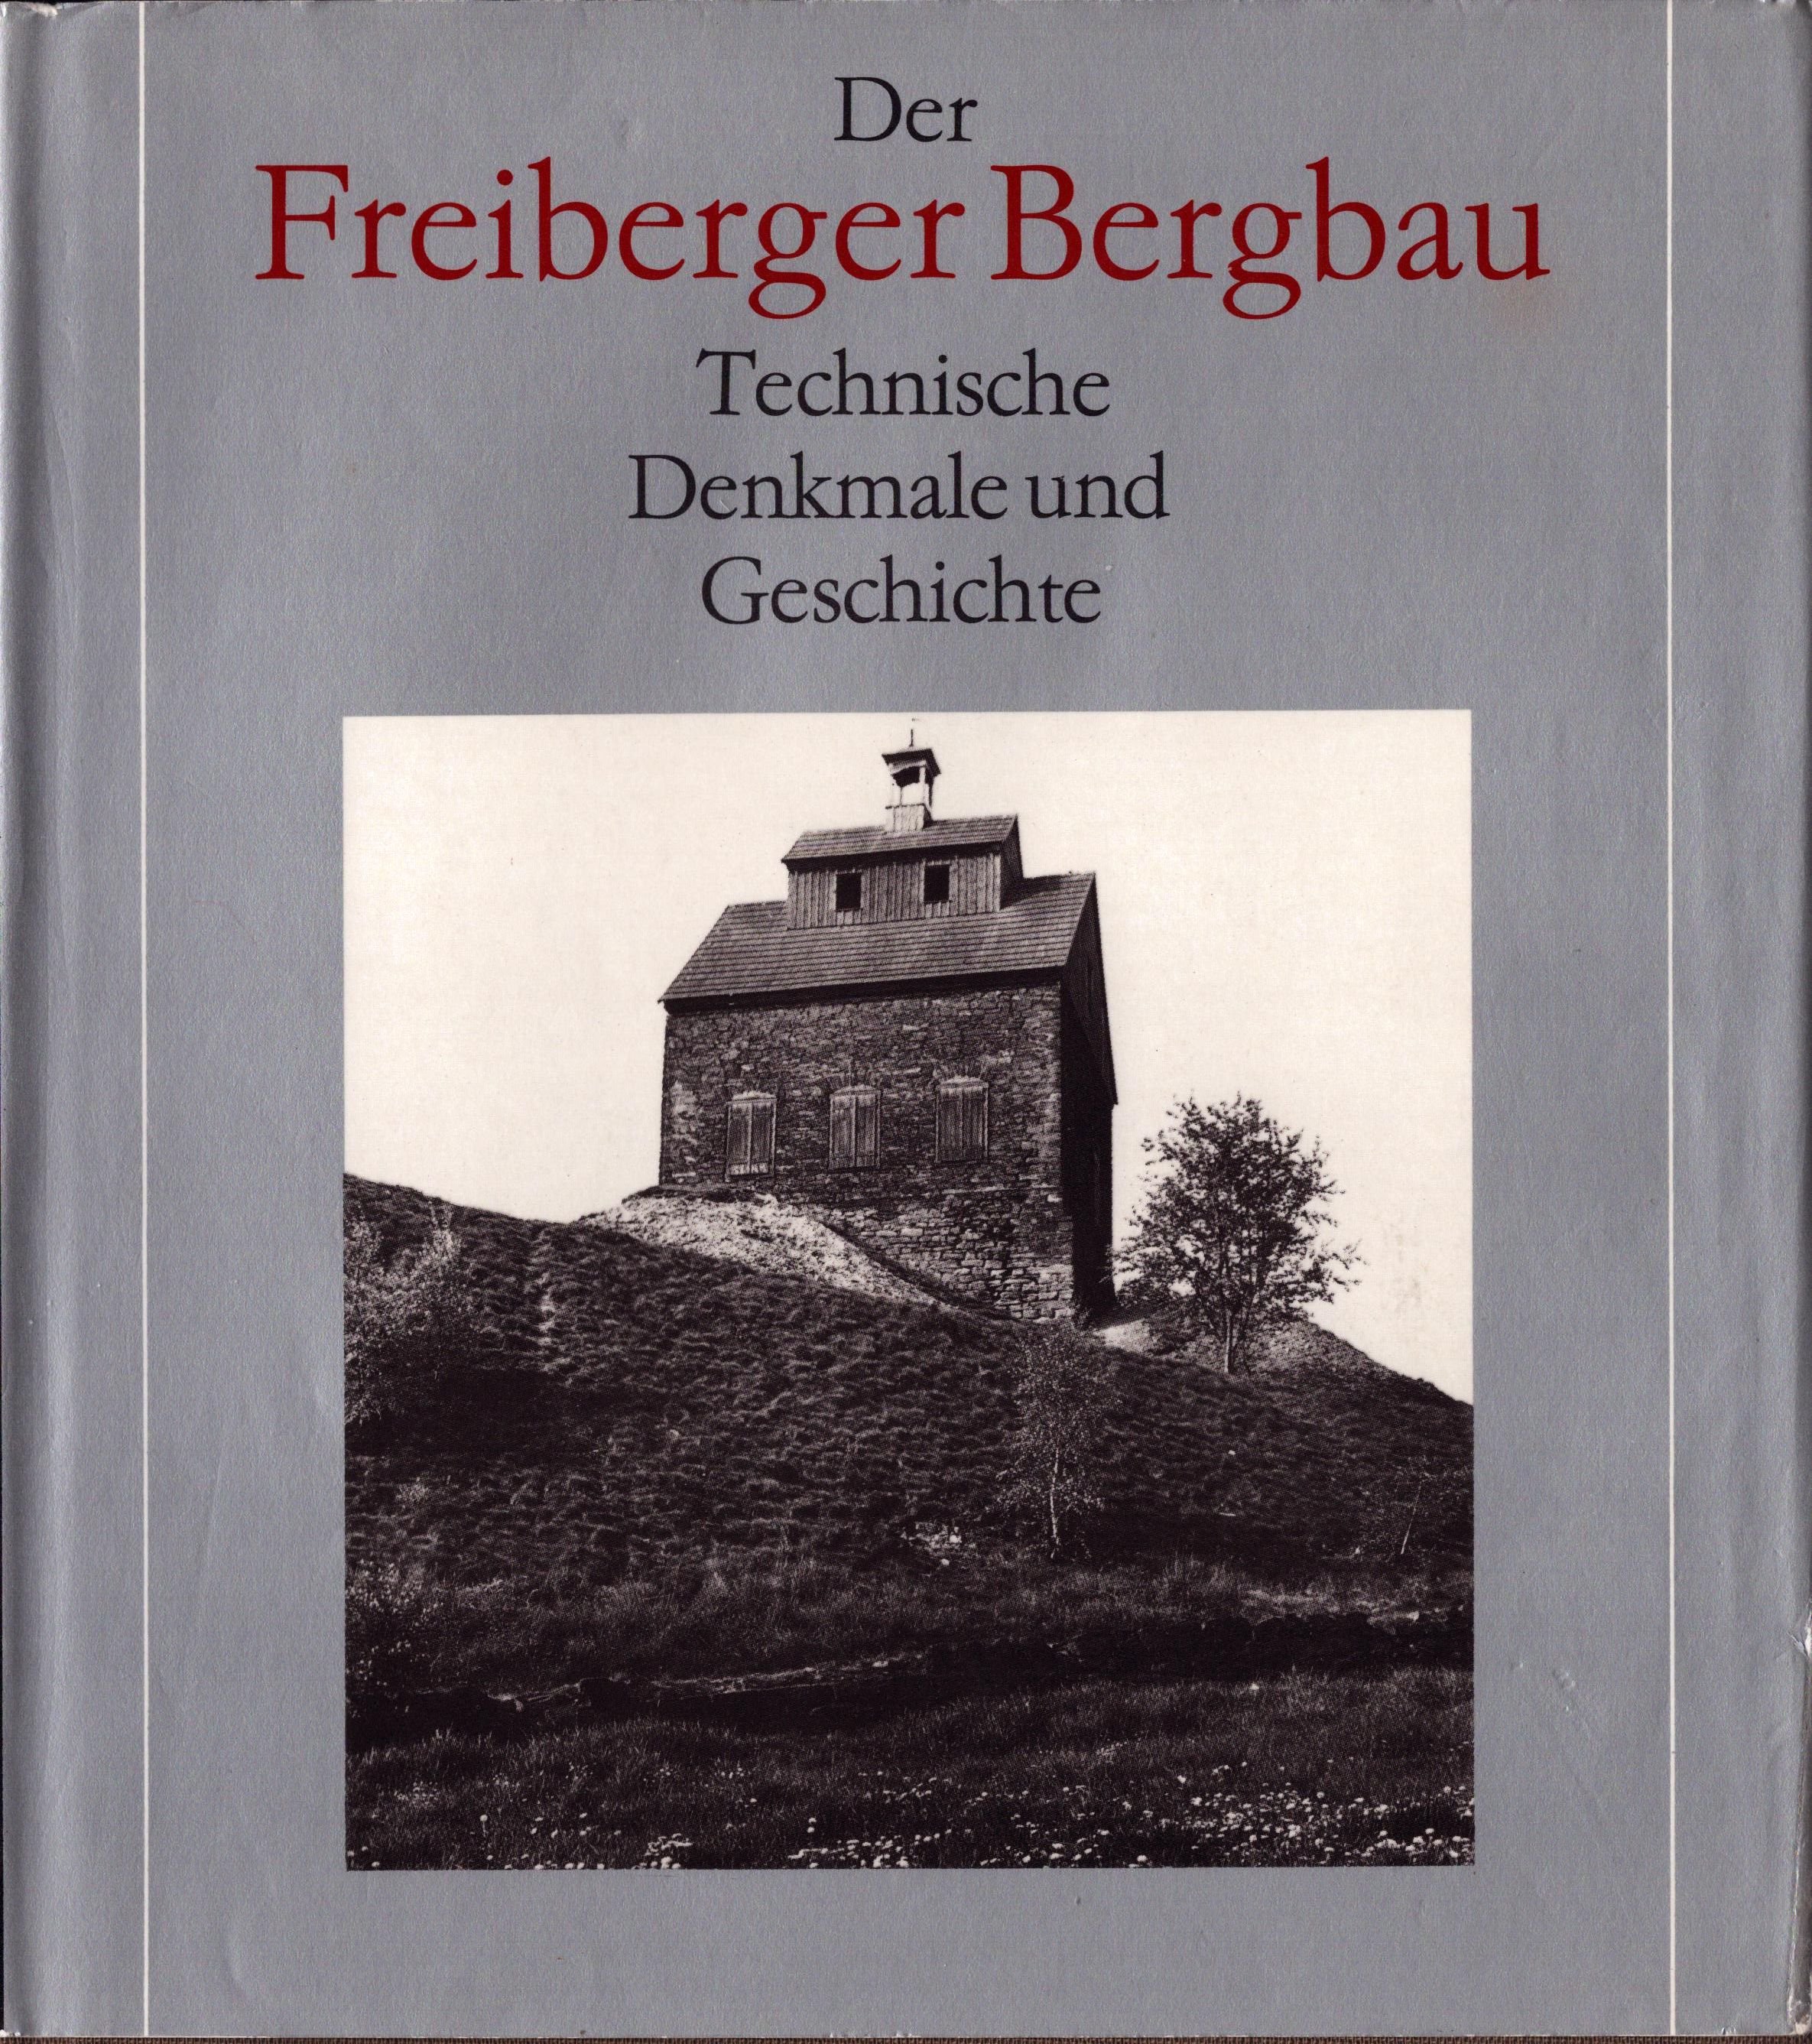 Der Freiberger Bergbau - Technische Denkmale und Geschichte (Archiv SAXONIA-FREIBERG-STIFTUNG CC BY-NC-SA)